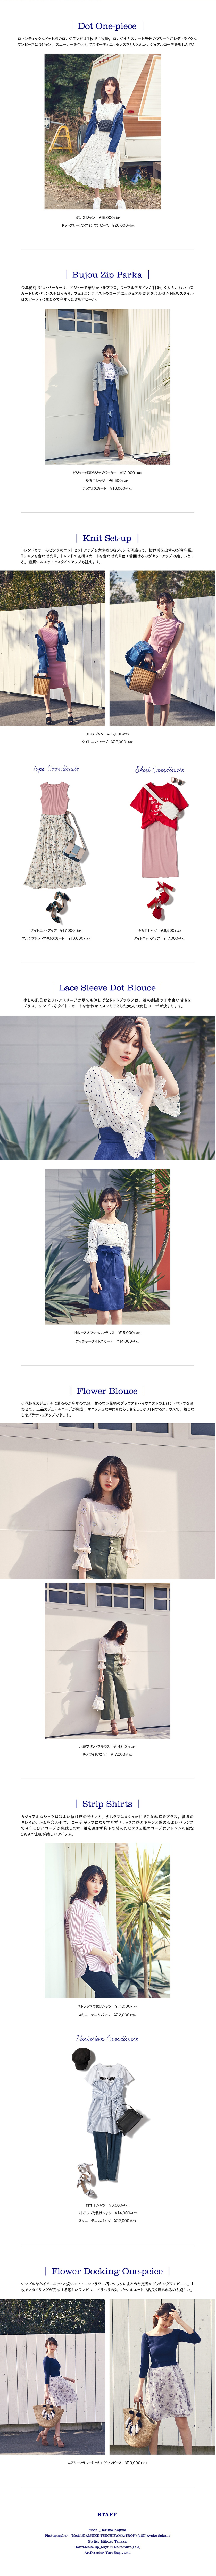 WEB ALBUM vol.28 - Rirandture × 小嶋陽菜